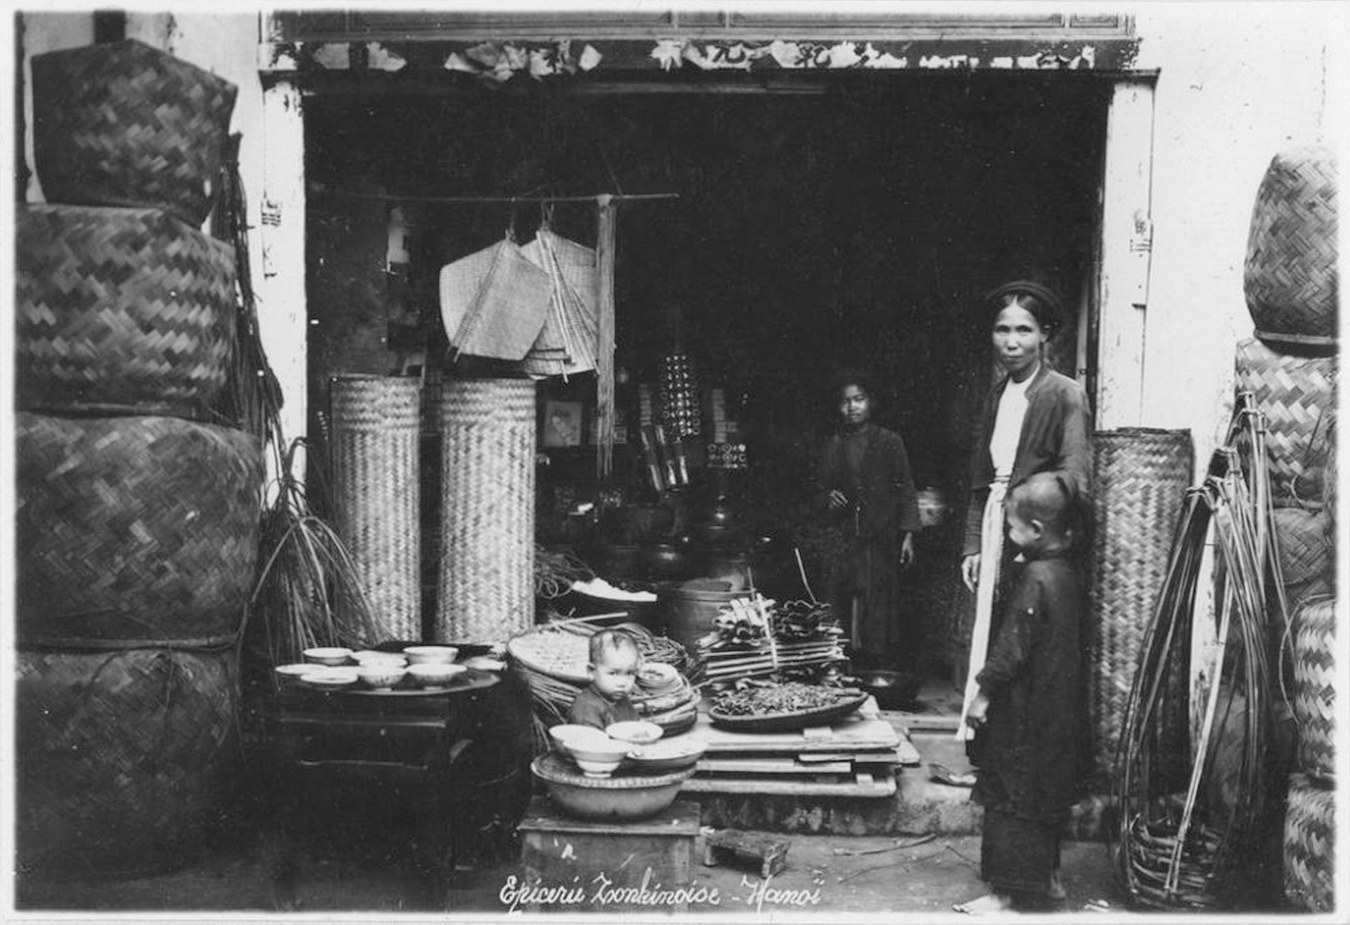 Ảnh lạ về các cửa hàng ở Hà Nội năm 1950